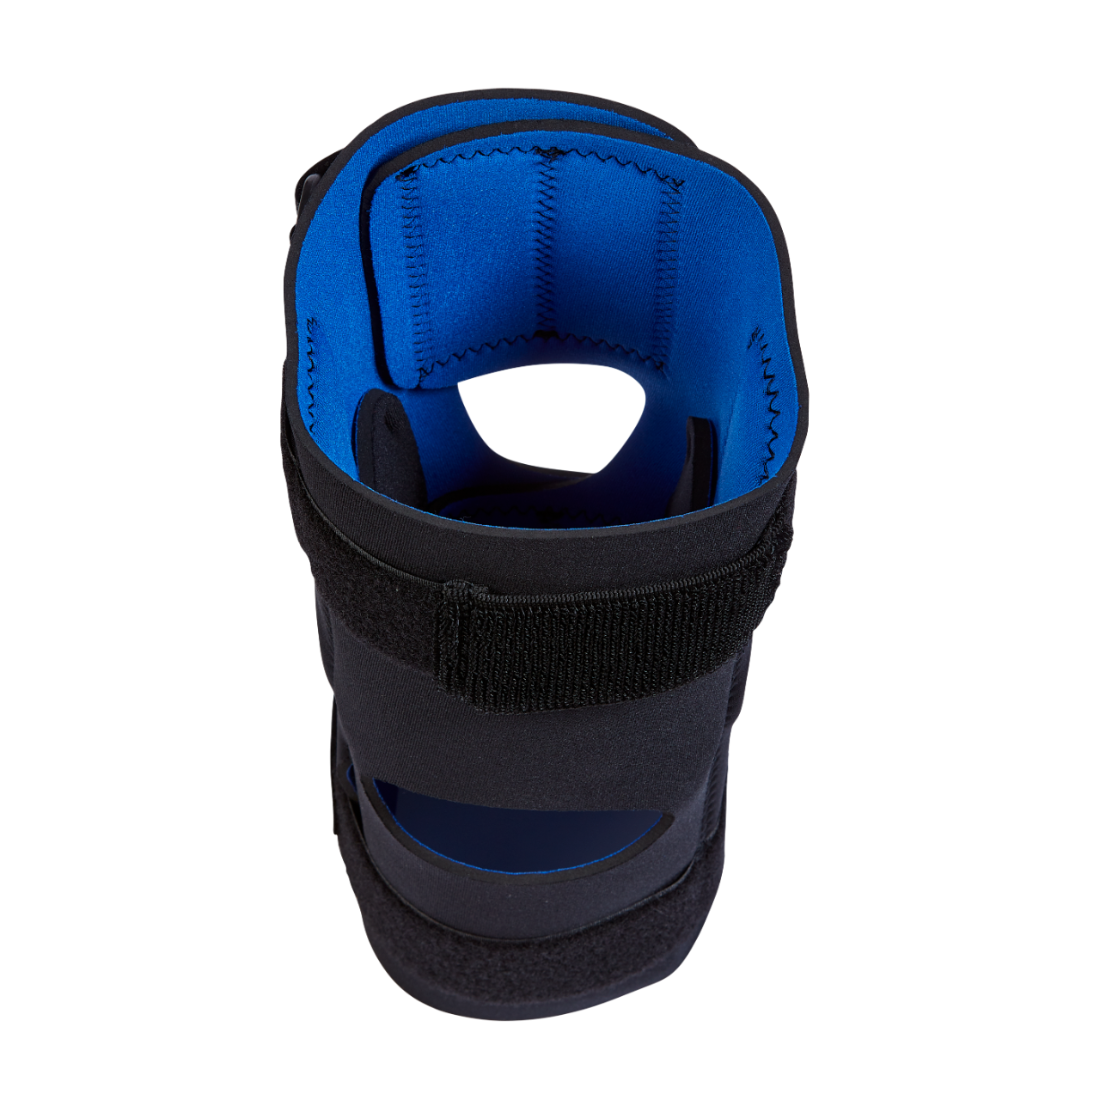 Össur Formfit® WrapAround Hinged Knee Support Brace – Support